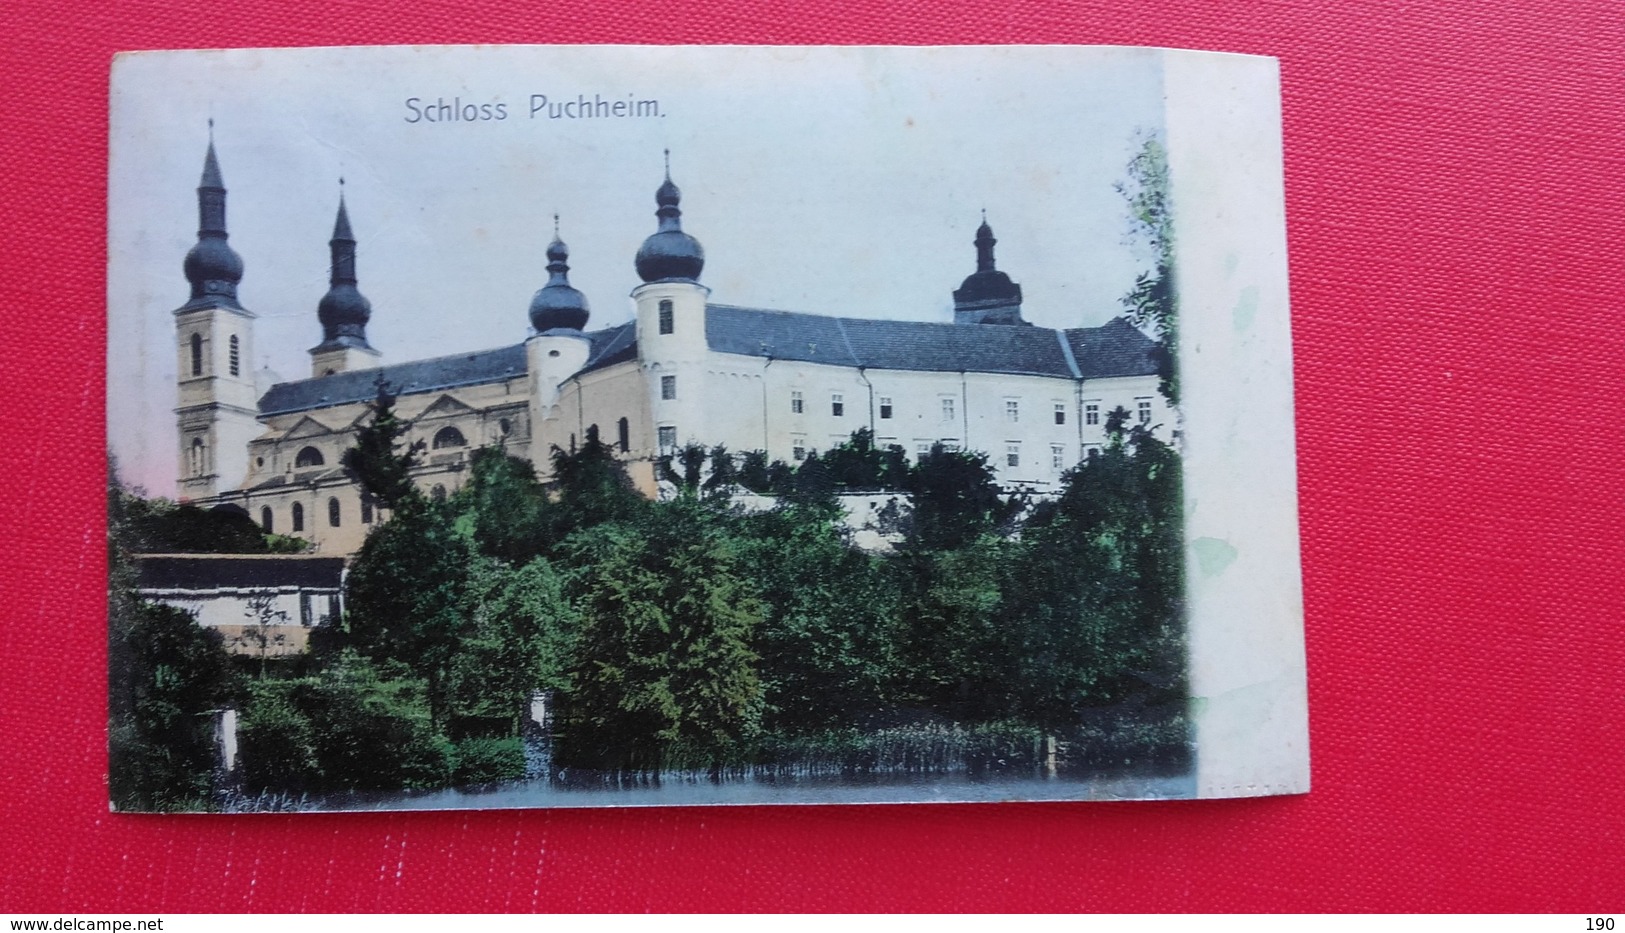 Schloss Puchheim - Attnang-Pucheim